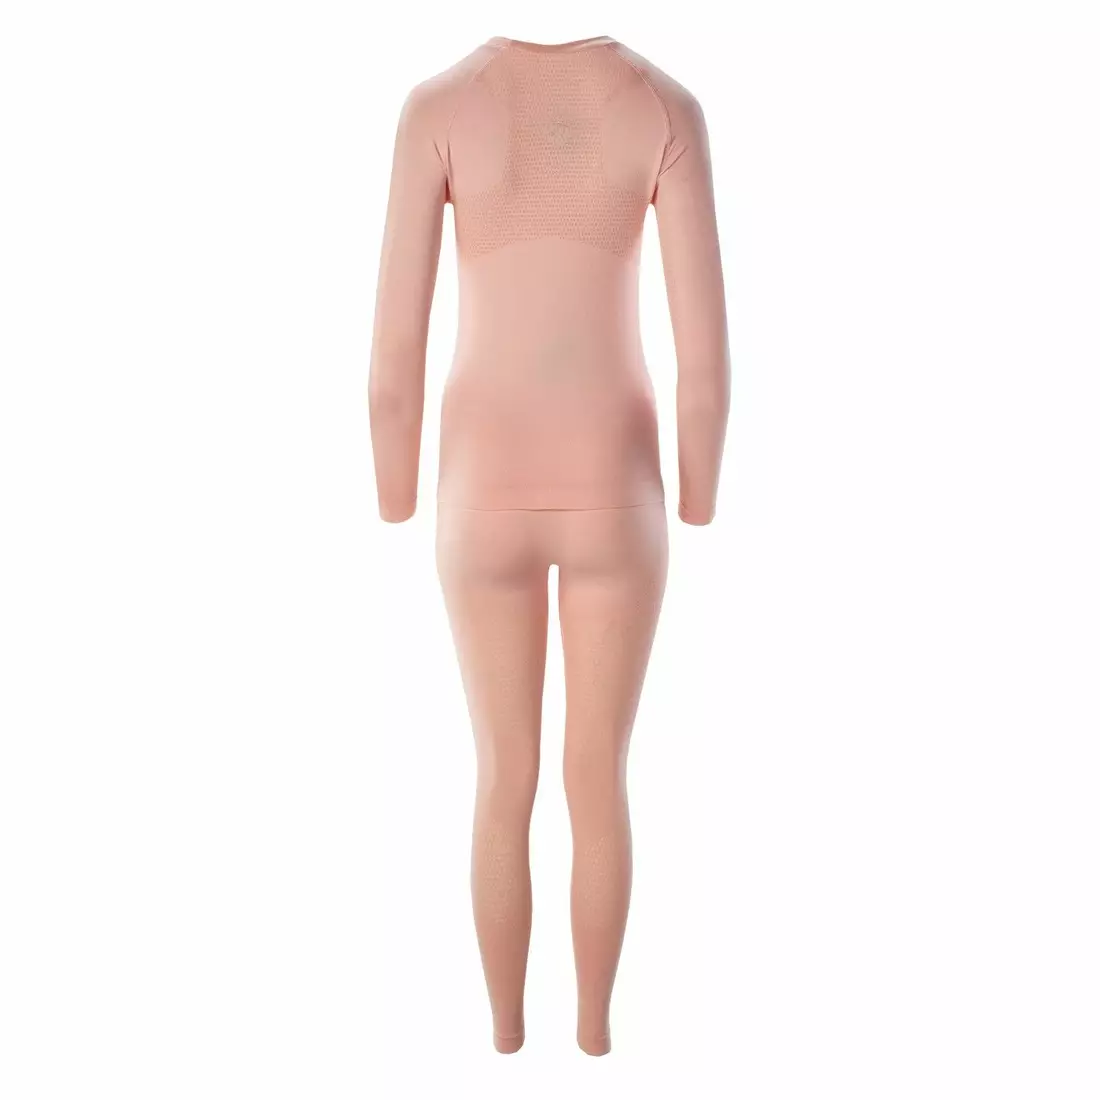 IGUANA, Dámská sada termoaktivního spodního prádla: tričko + legíny LADY ZINKE II, růžový 